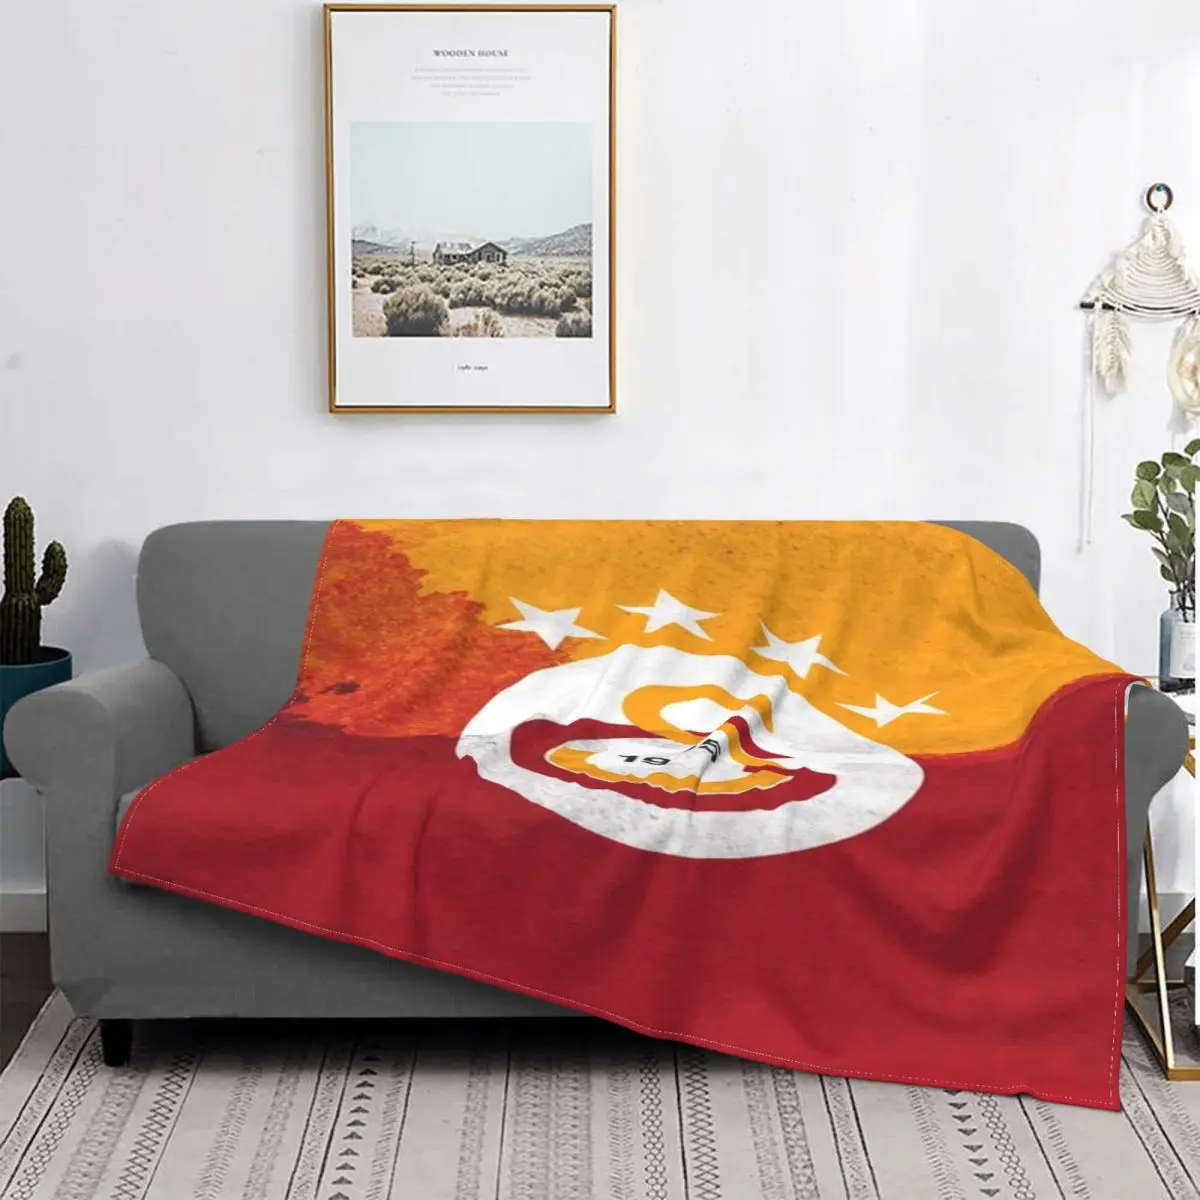 

Одеяло Galatasaray 270, покрывало для кровати, плед, покрывало, пляжное покрывало, аниме одеяло, искусственное одеяло, пляжное полотенце, роскошное